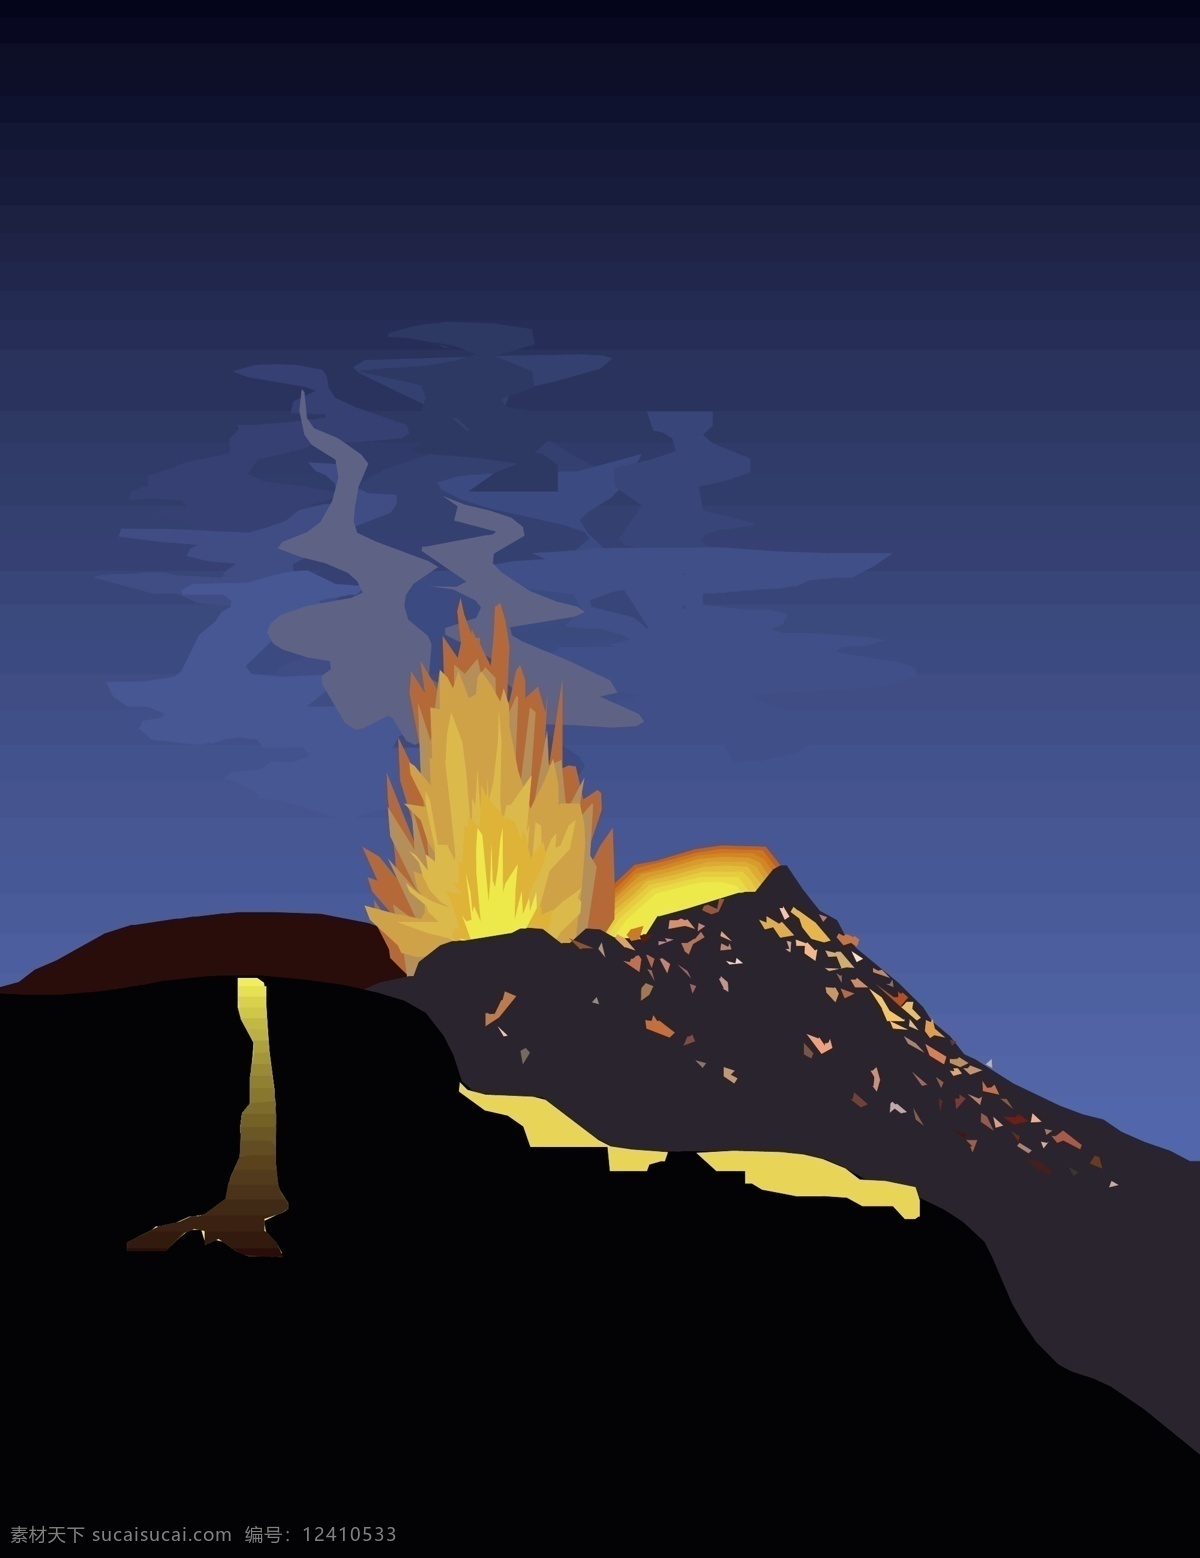 火山 喷发 景象 插画 火山喷发 火焰 模板 设计稿 素材元素 岩浆 壮观 火山口 源文件 矢量图